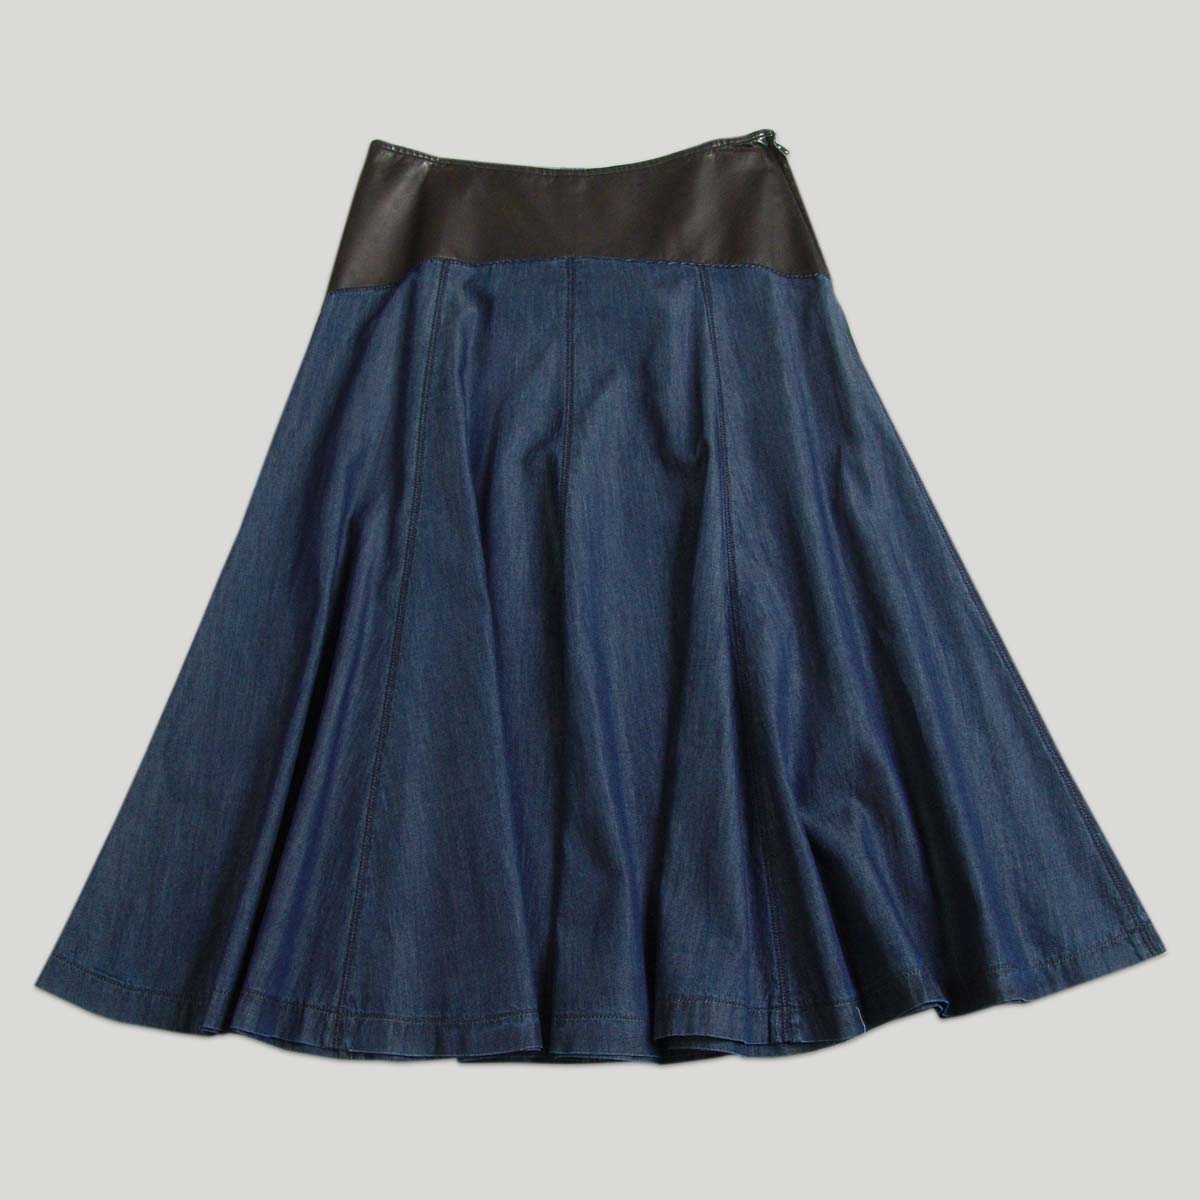 Women's Godet Skirt in denim